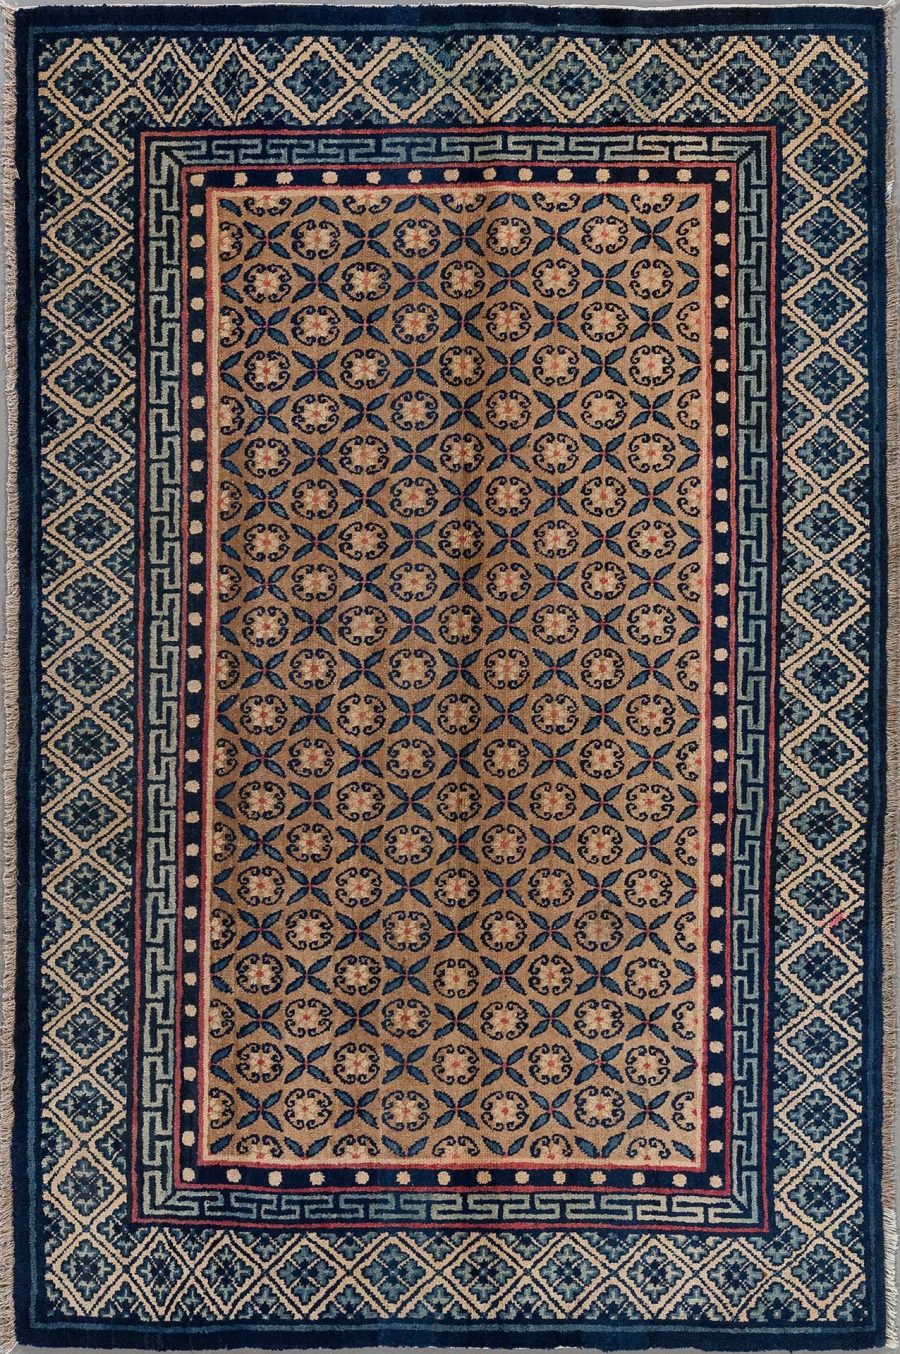 Orientteppich mit detailliertem Muster, bestehend aus wiederholenden blauen und beigen geometrischen und floralen Motiven eingerahmt von mehrschichtigen Bordüren in blau, beige und rot auf dunklem Grund.